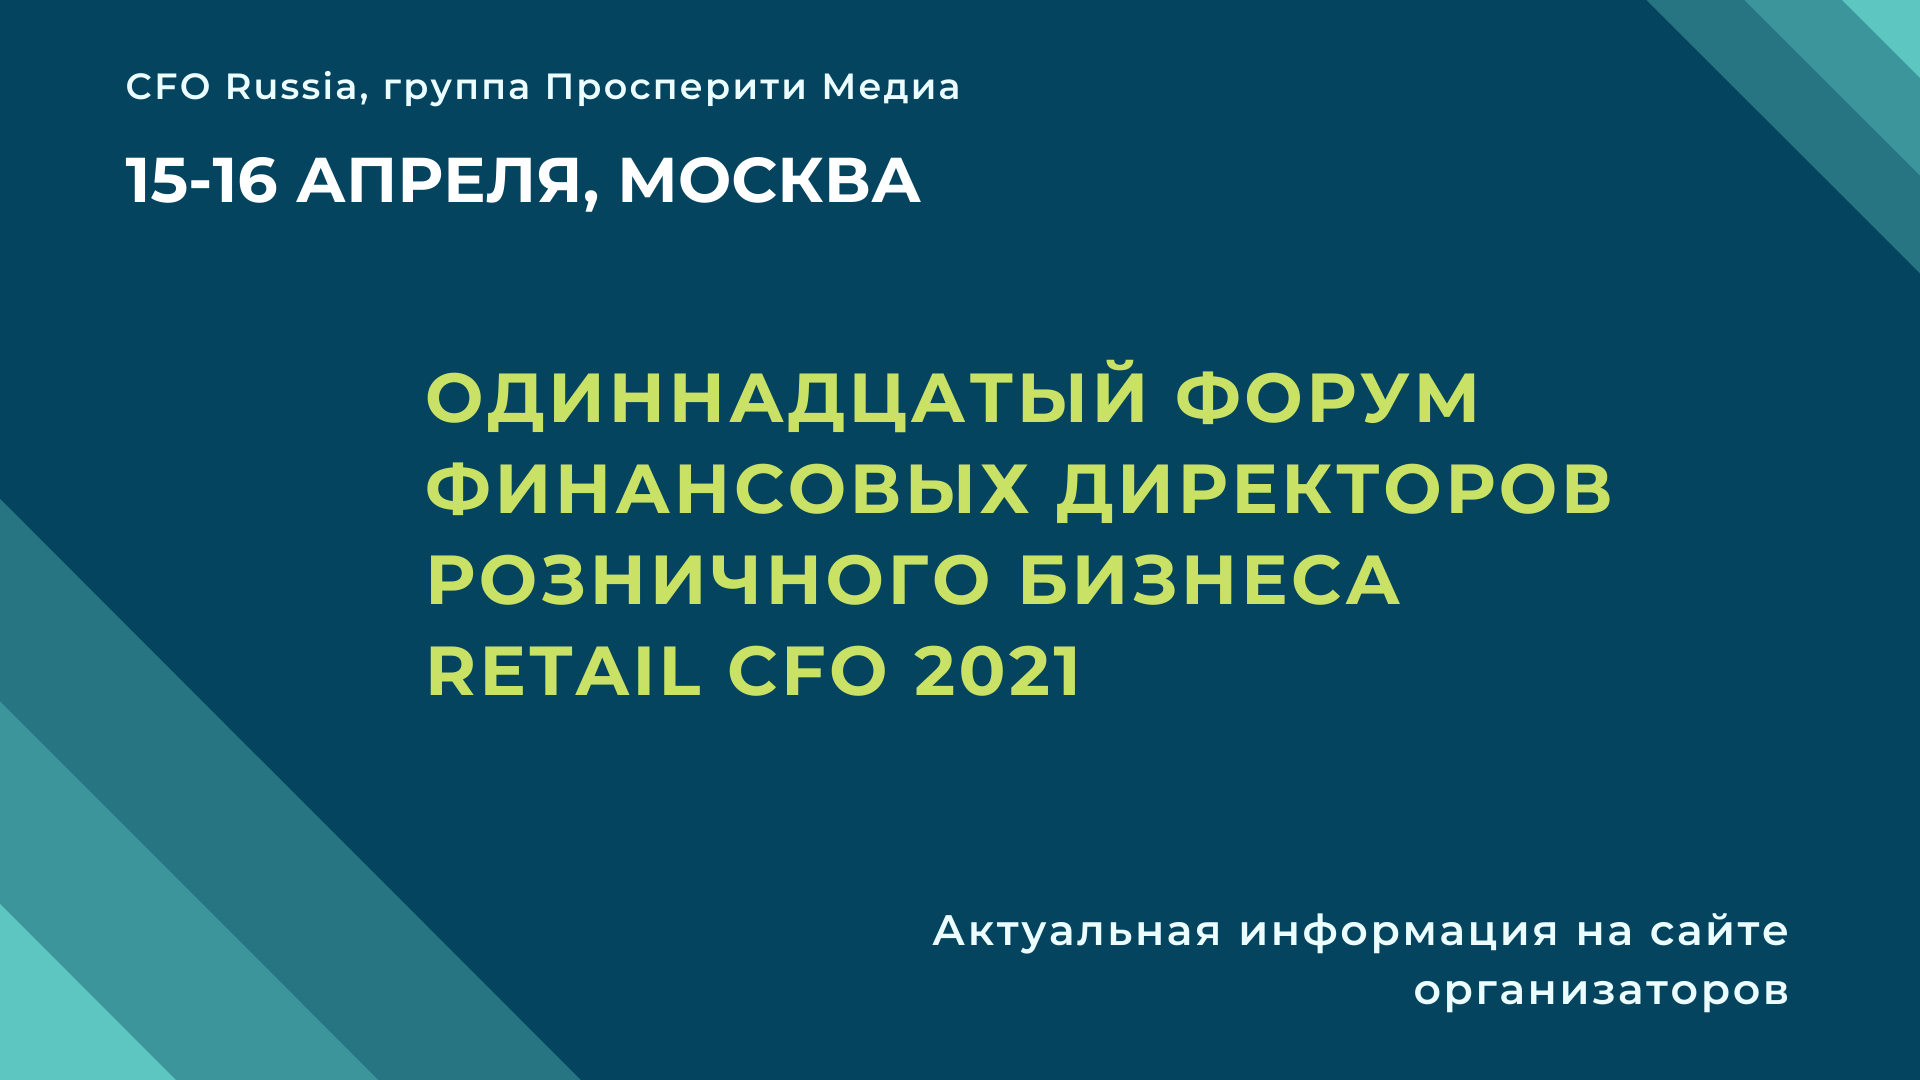       Retail CFO 2021